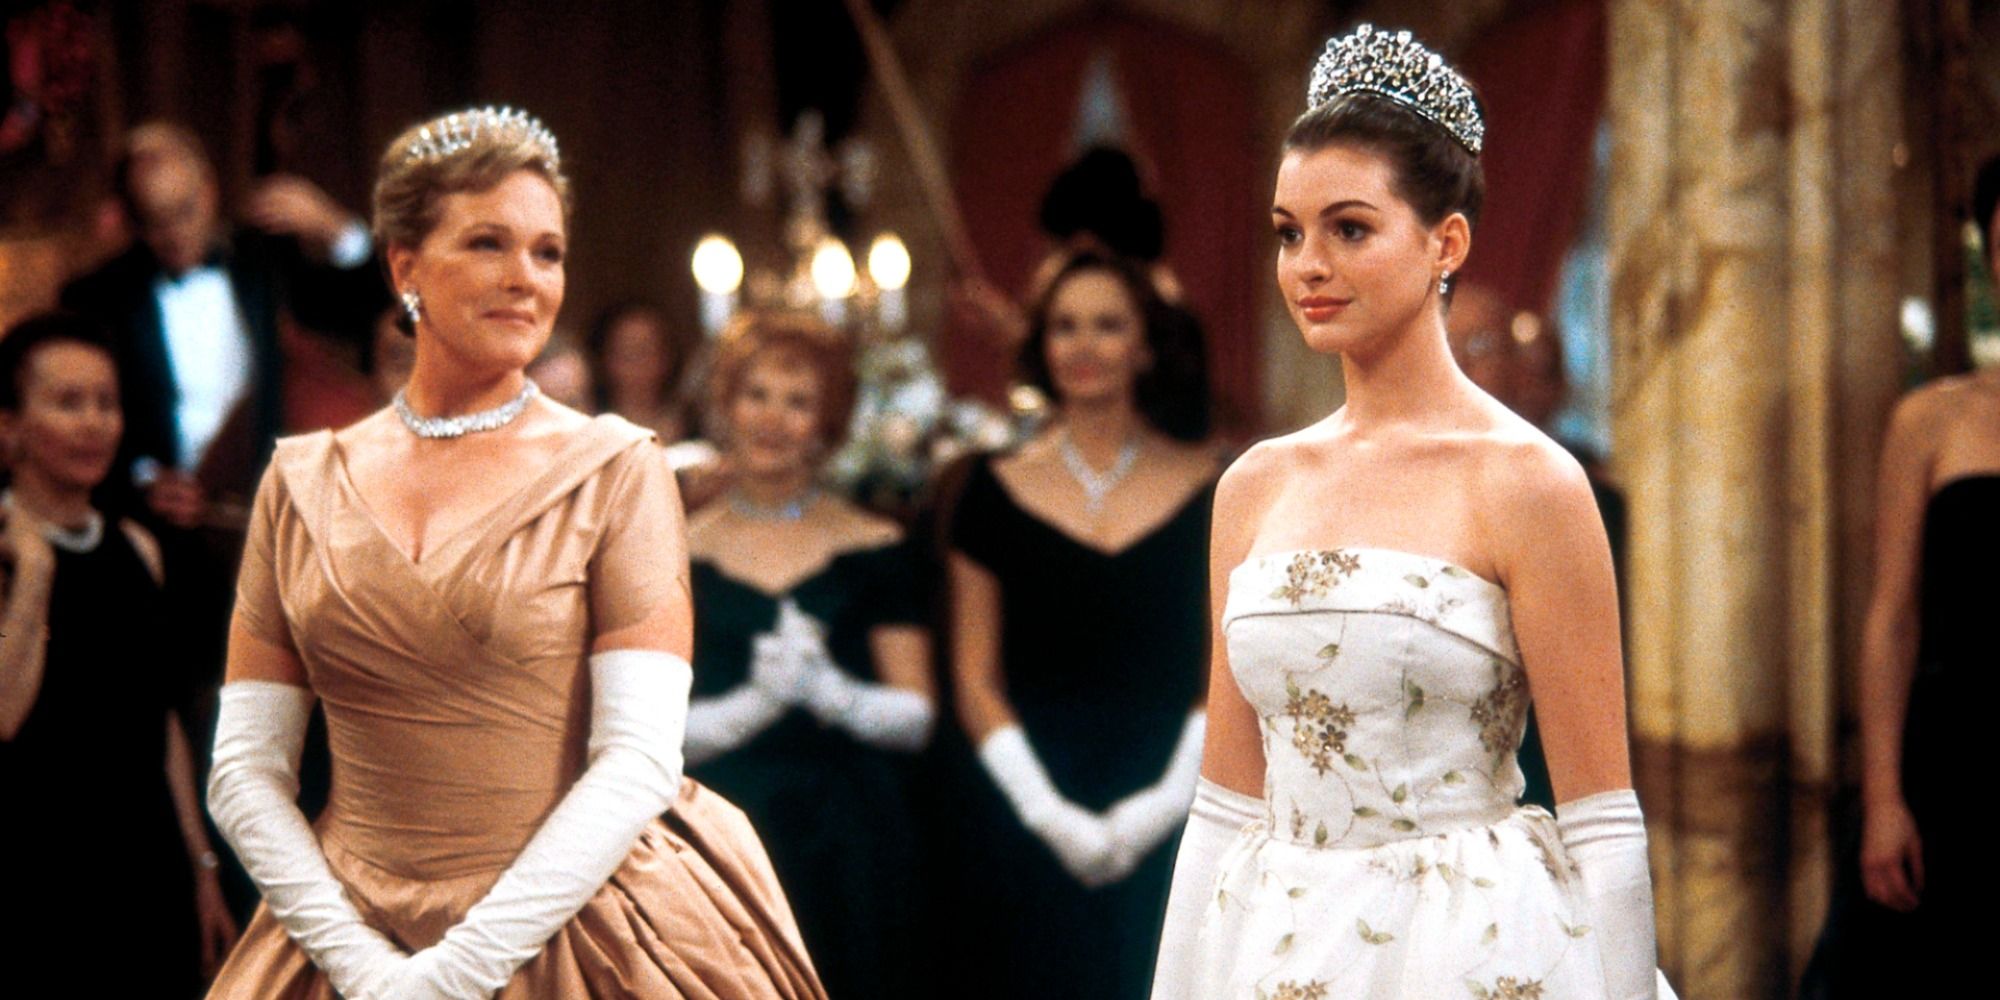 Julie Andrews et Anne Hathaway en robe de bal lors d'une cérémonie royale.